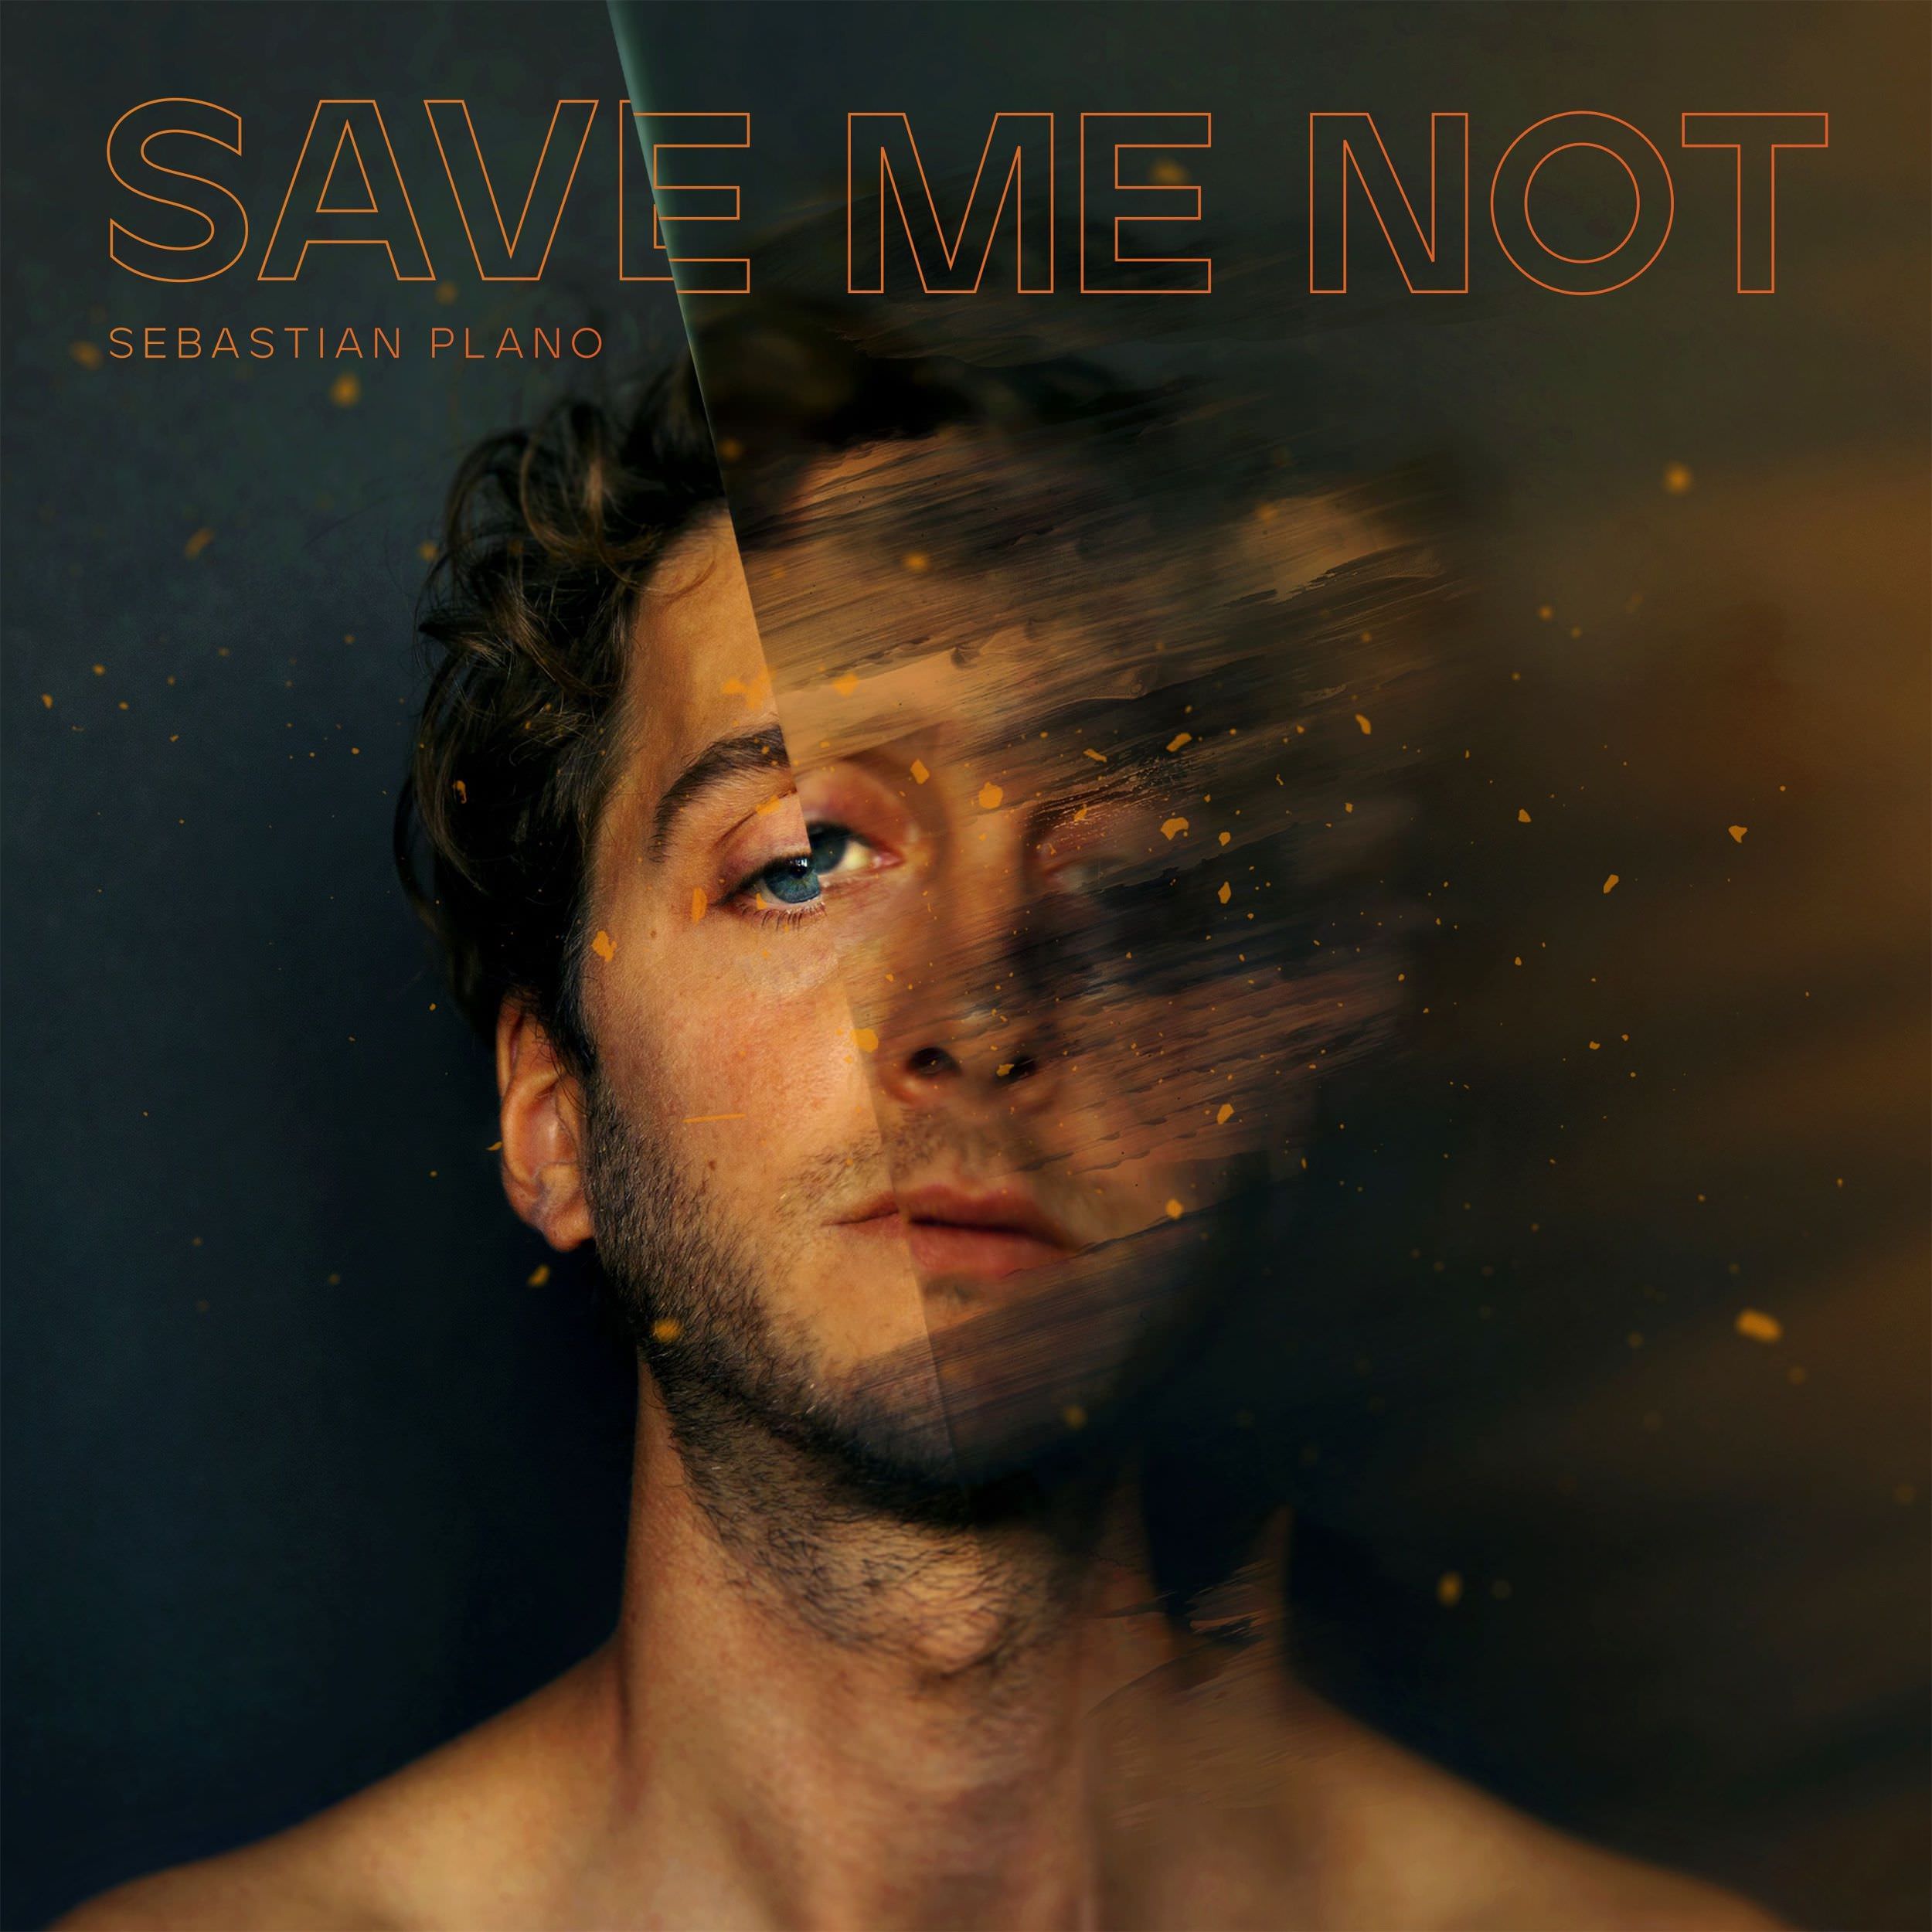 Save Me Not, Sebastian Plano